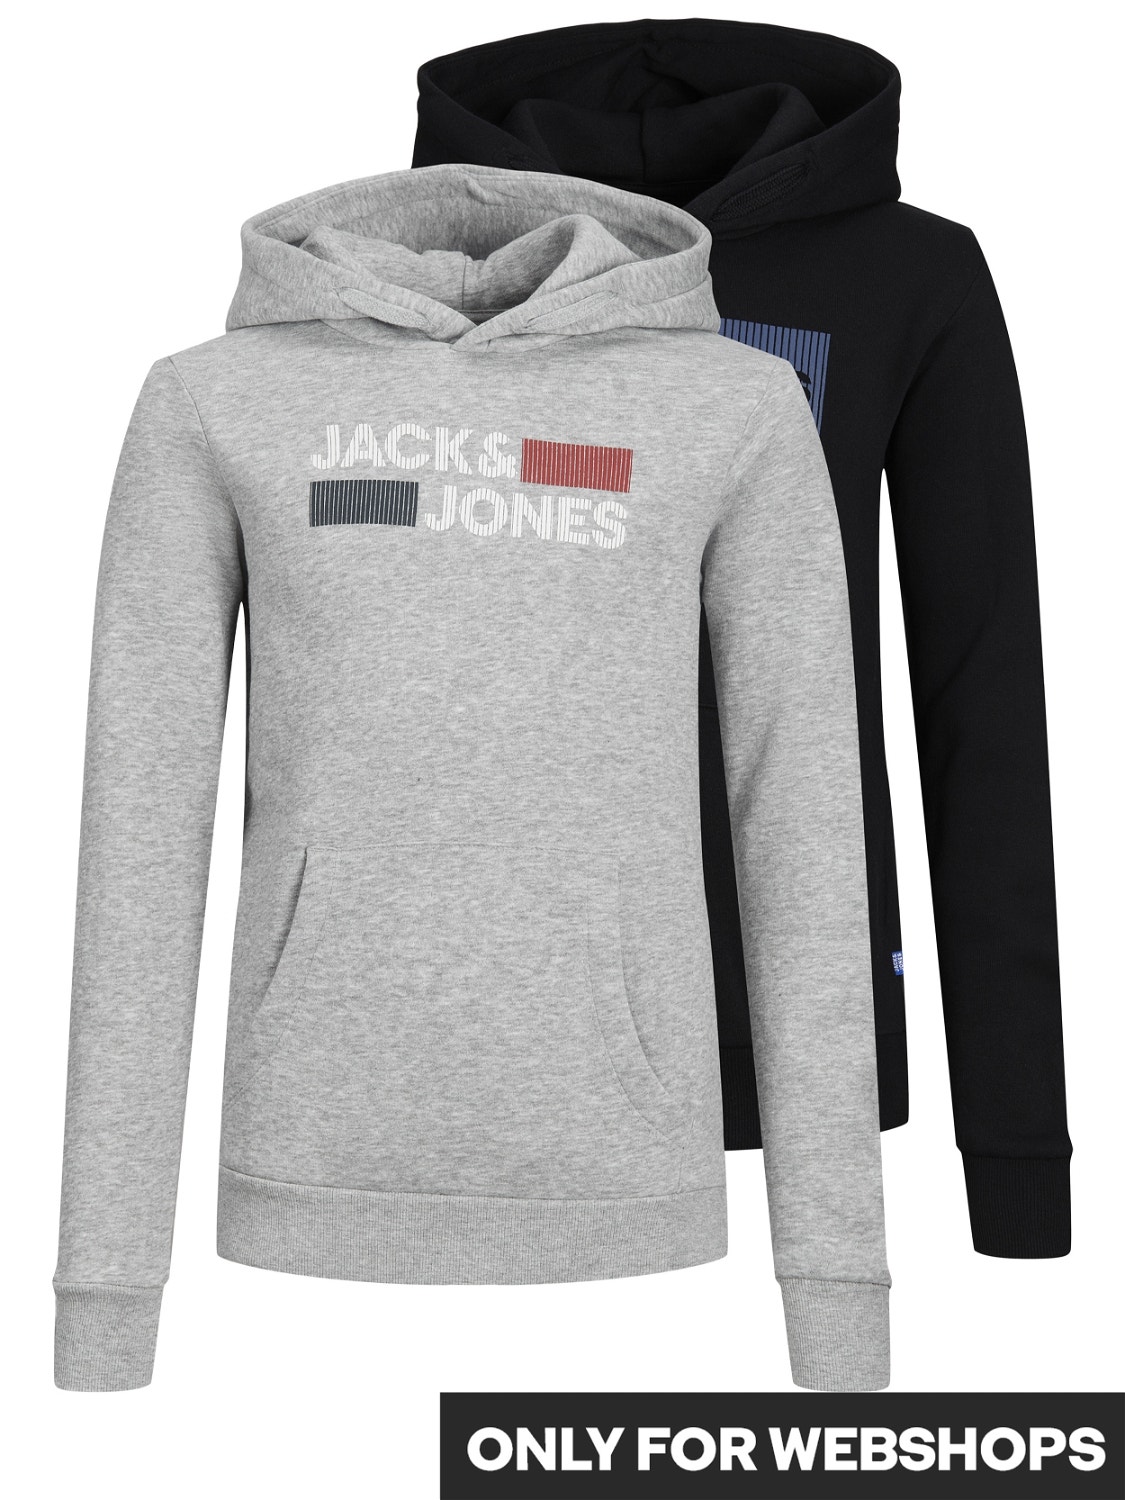 Jack & Jones 2-pack Logo Hoodie For boys -Black - 12210980